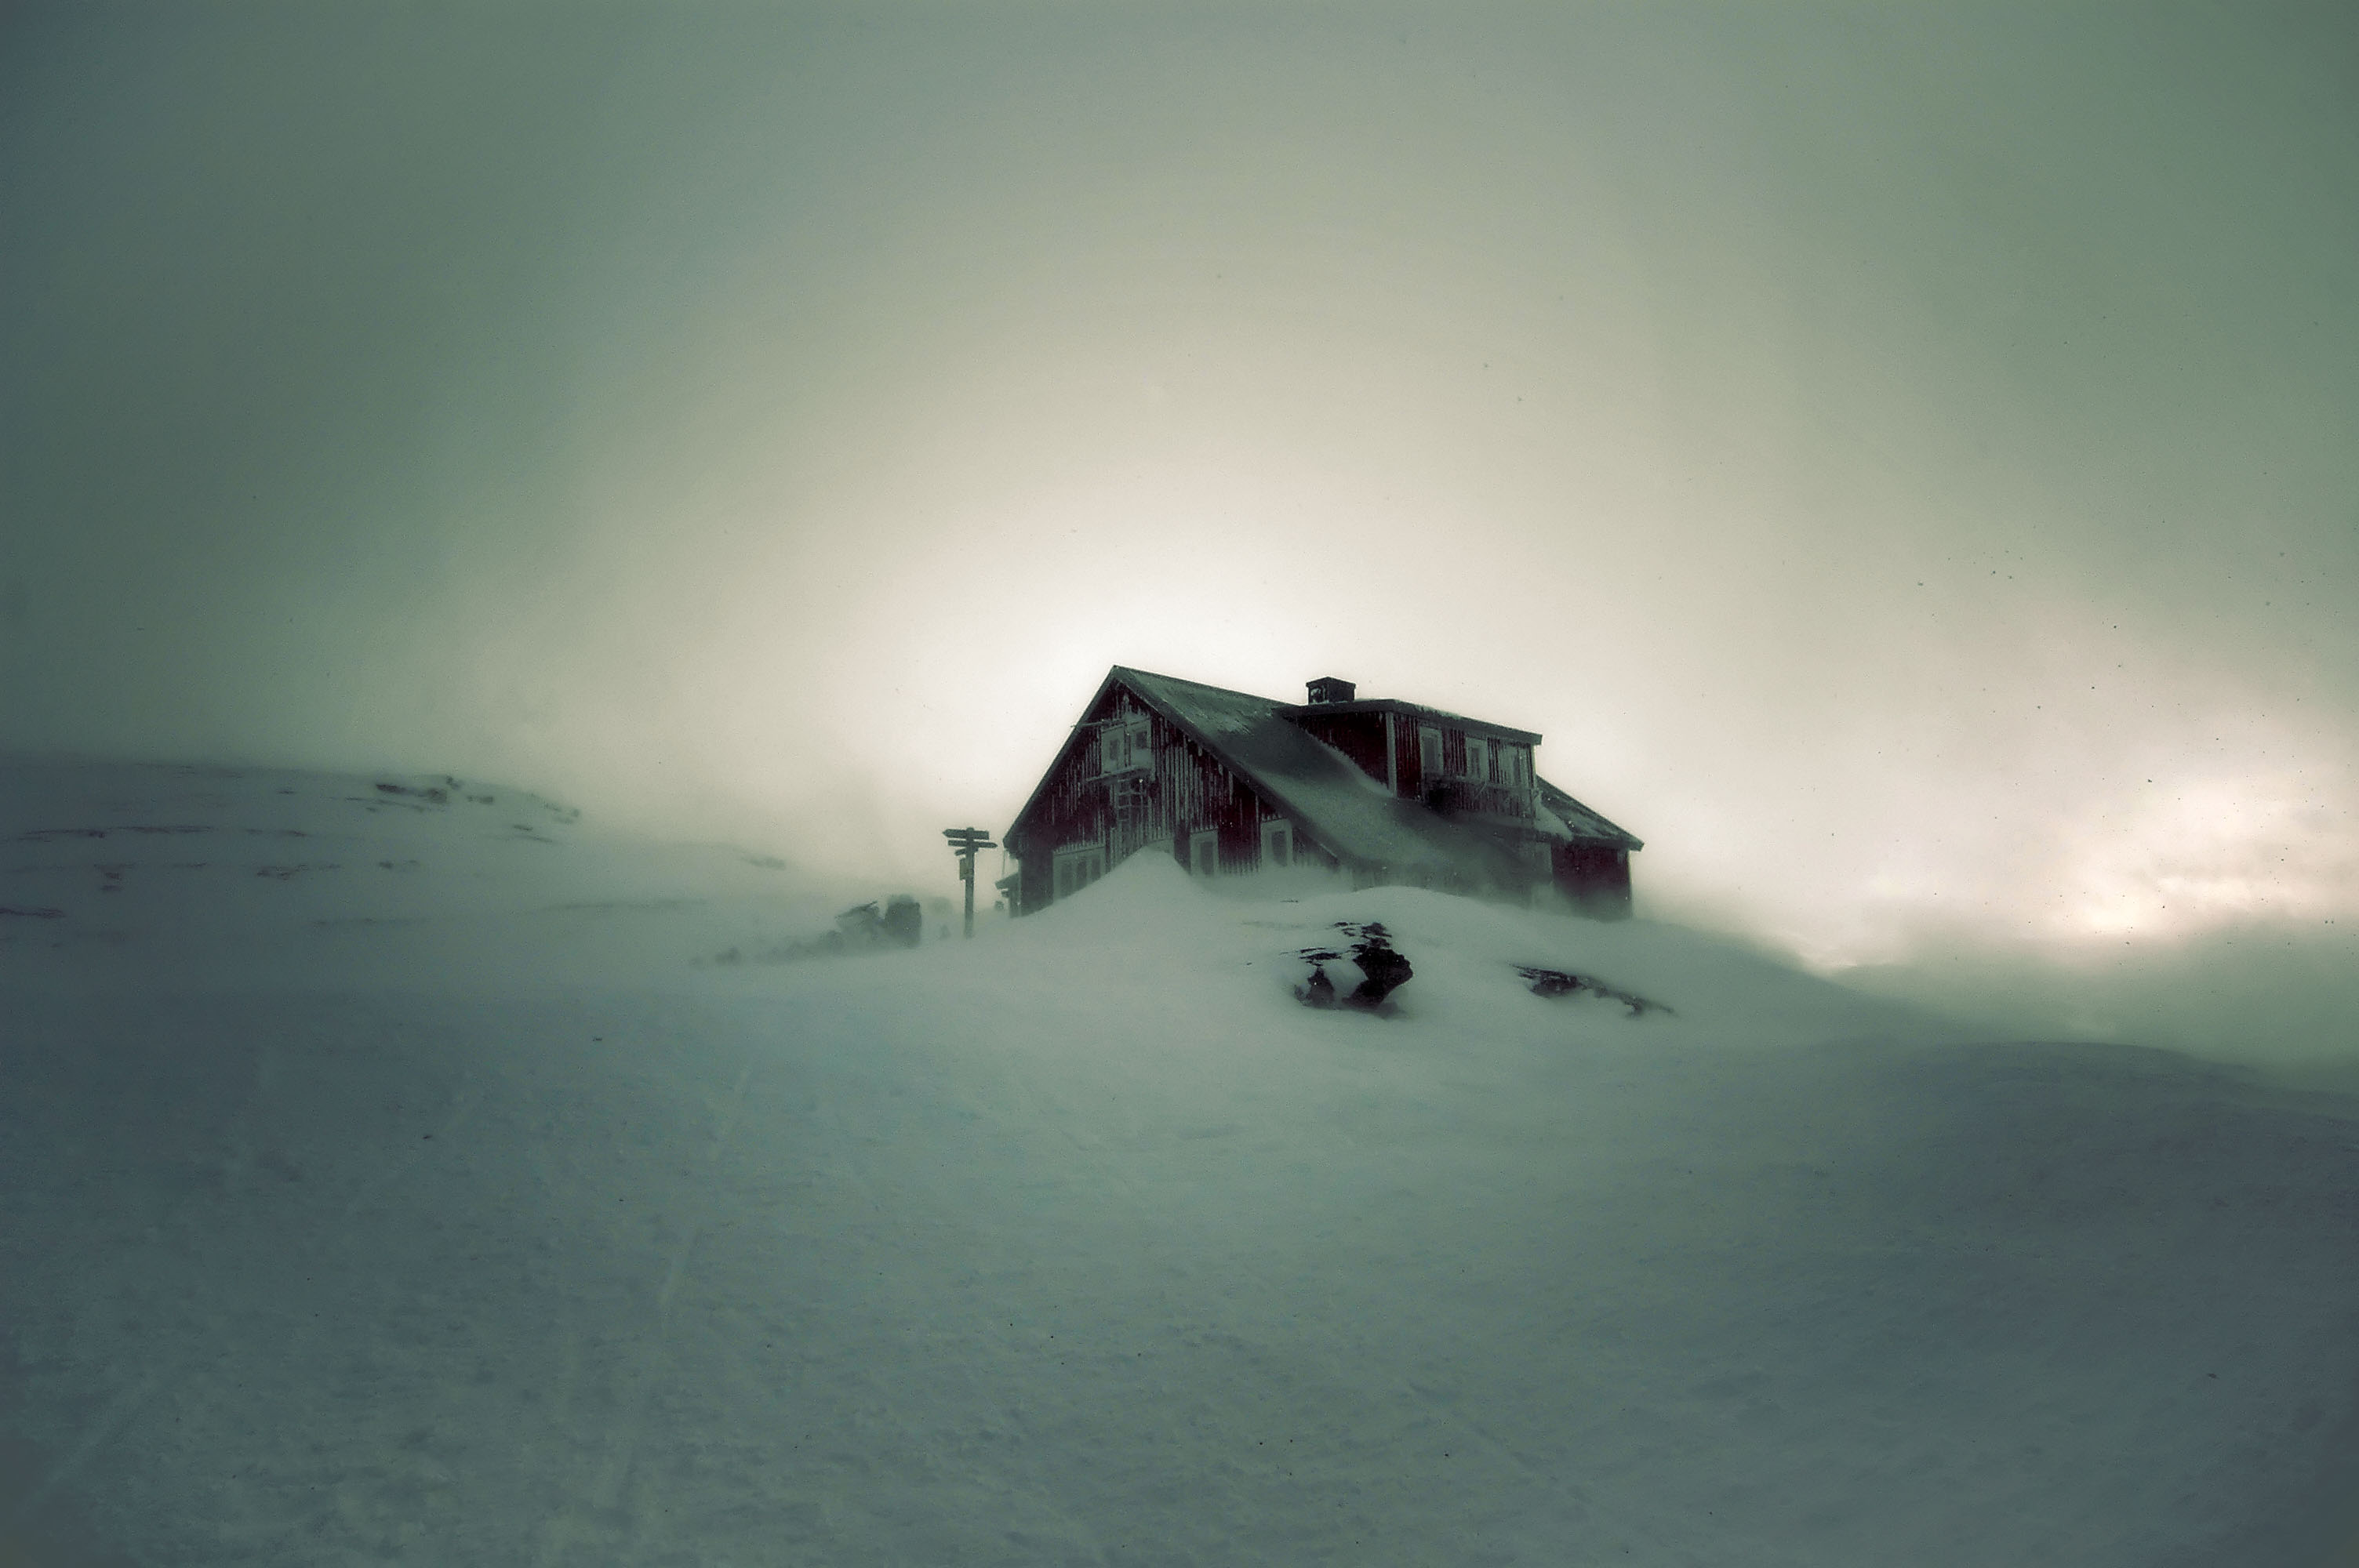 Квартиры в пурге. Одинокий дом. Заброшенный дом в горах. Метель домик. Хижина в снегу.